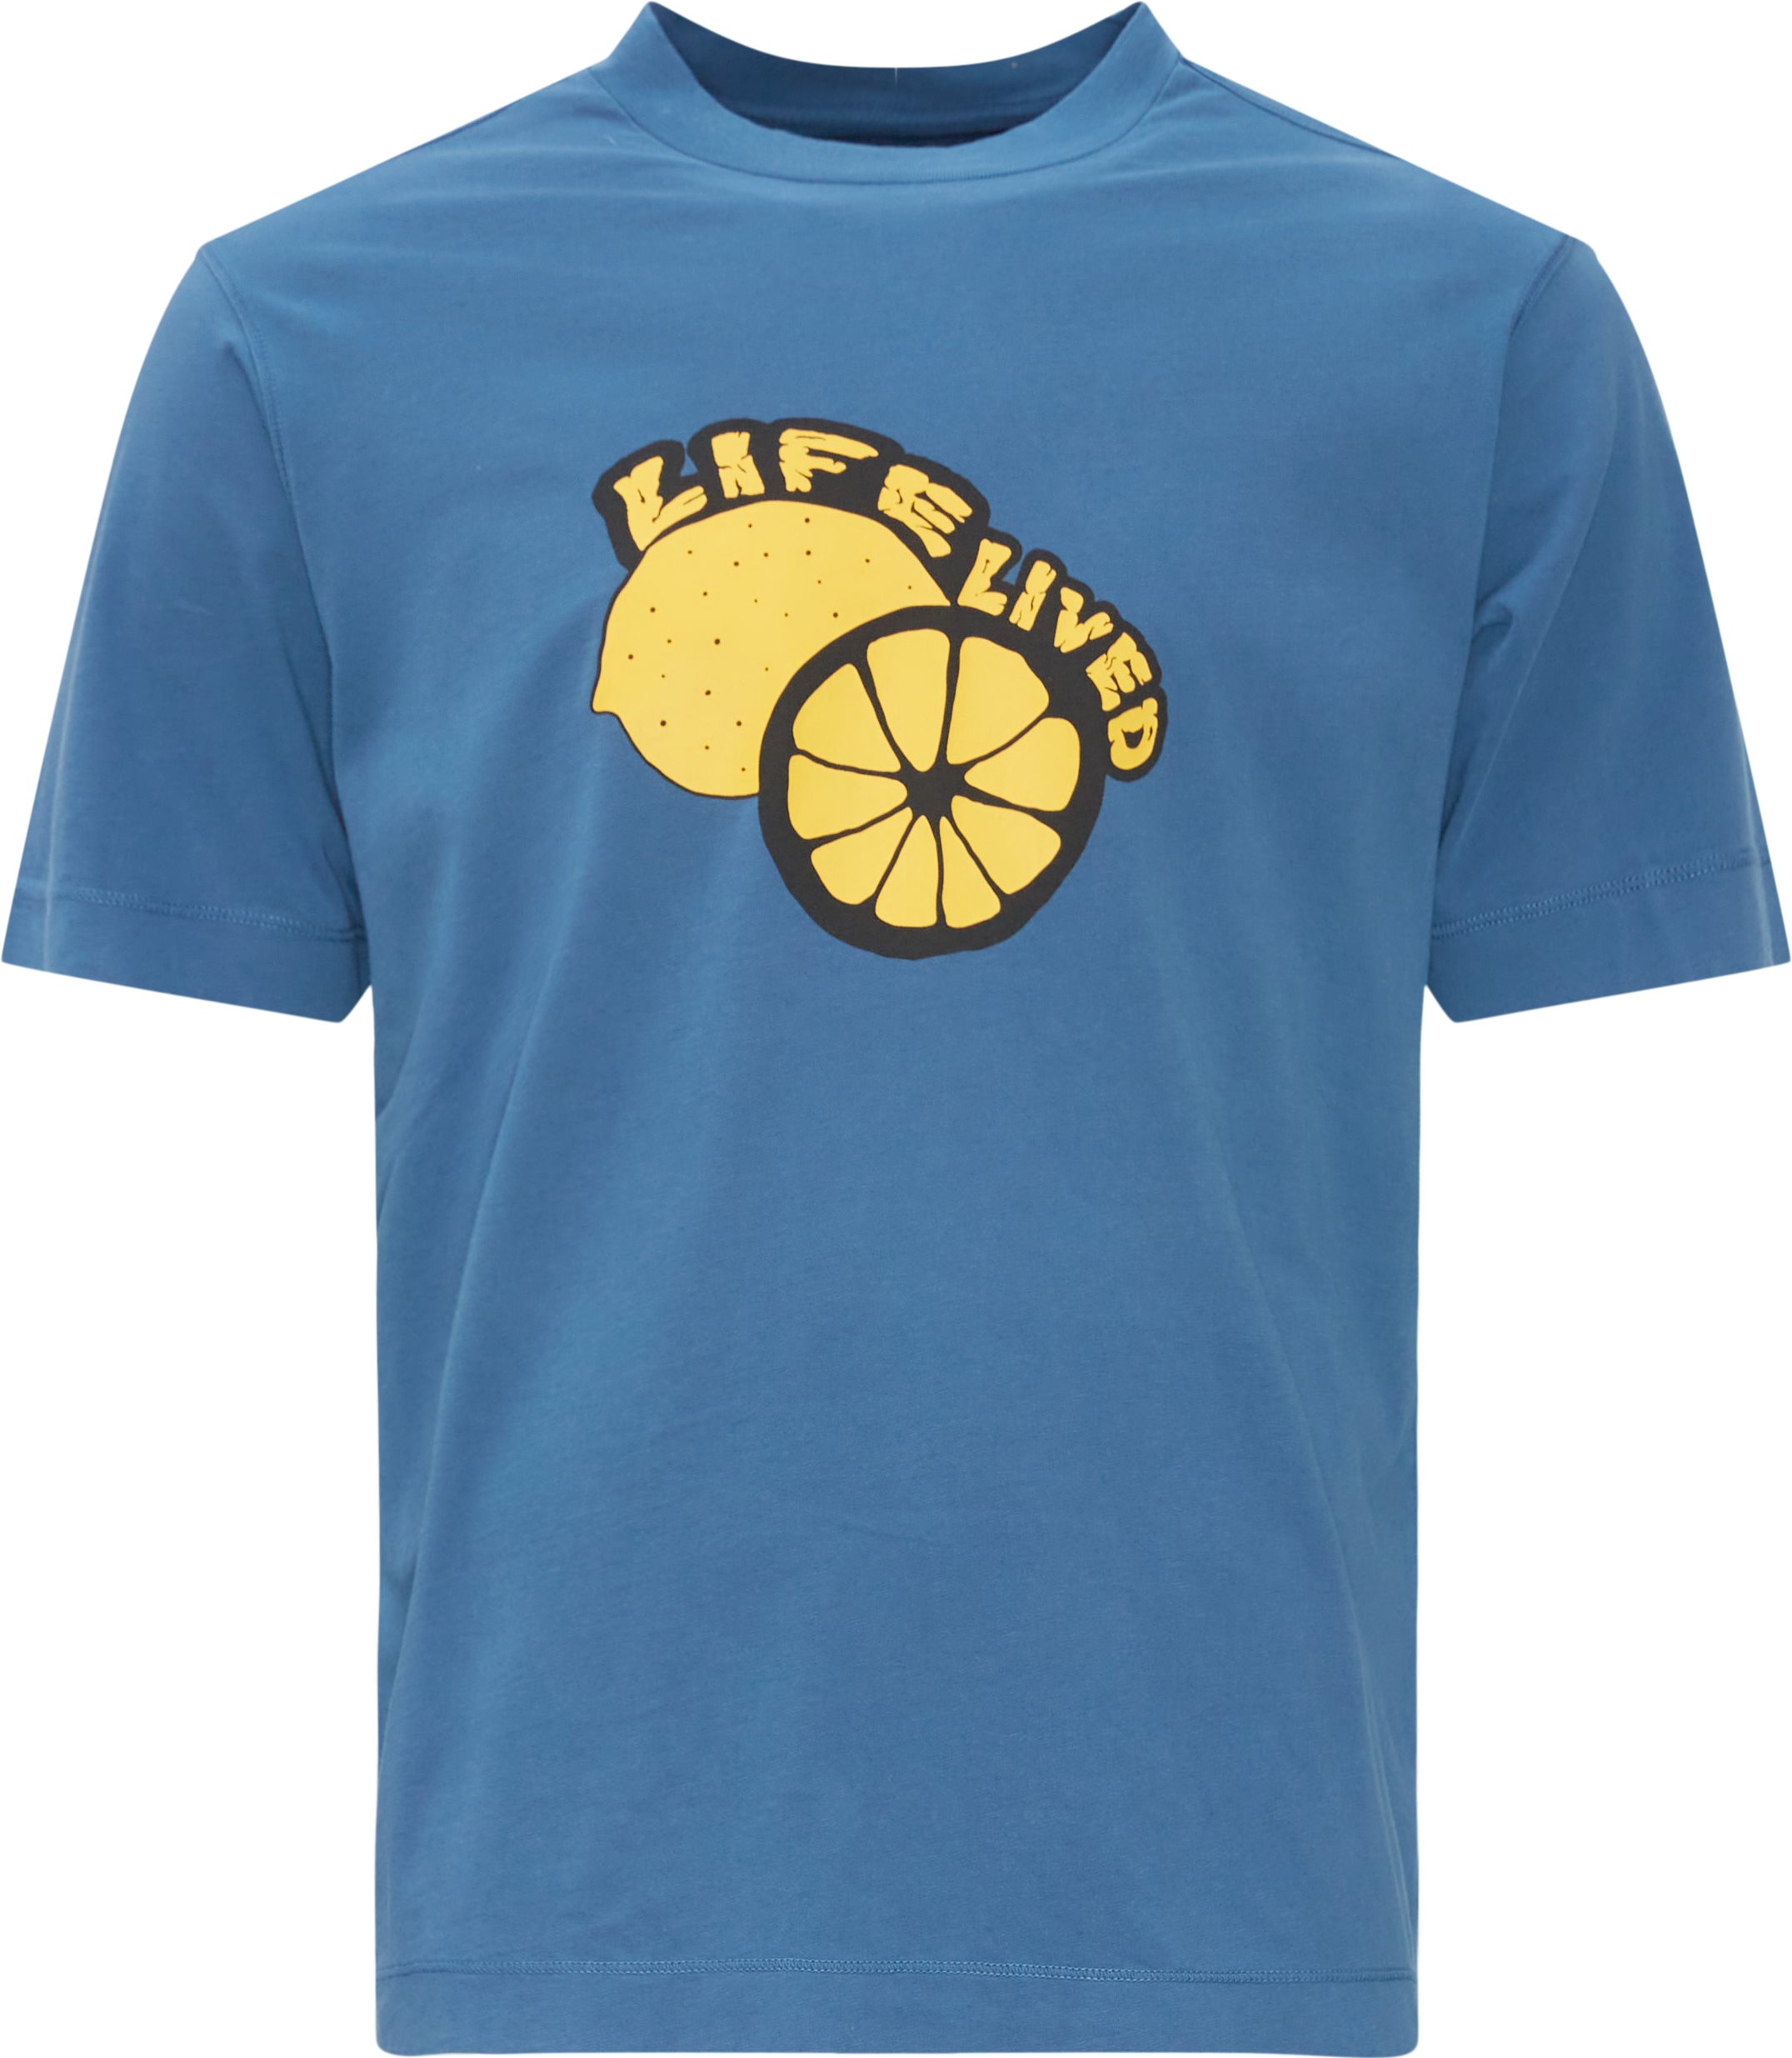 Print Tee - T-shirts - Regular fit - Blå